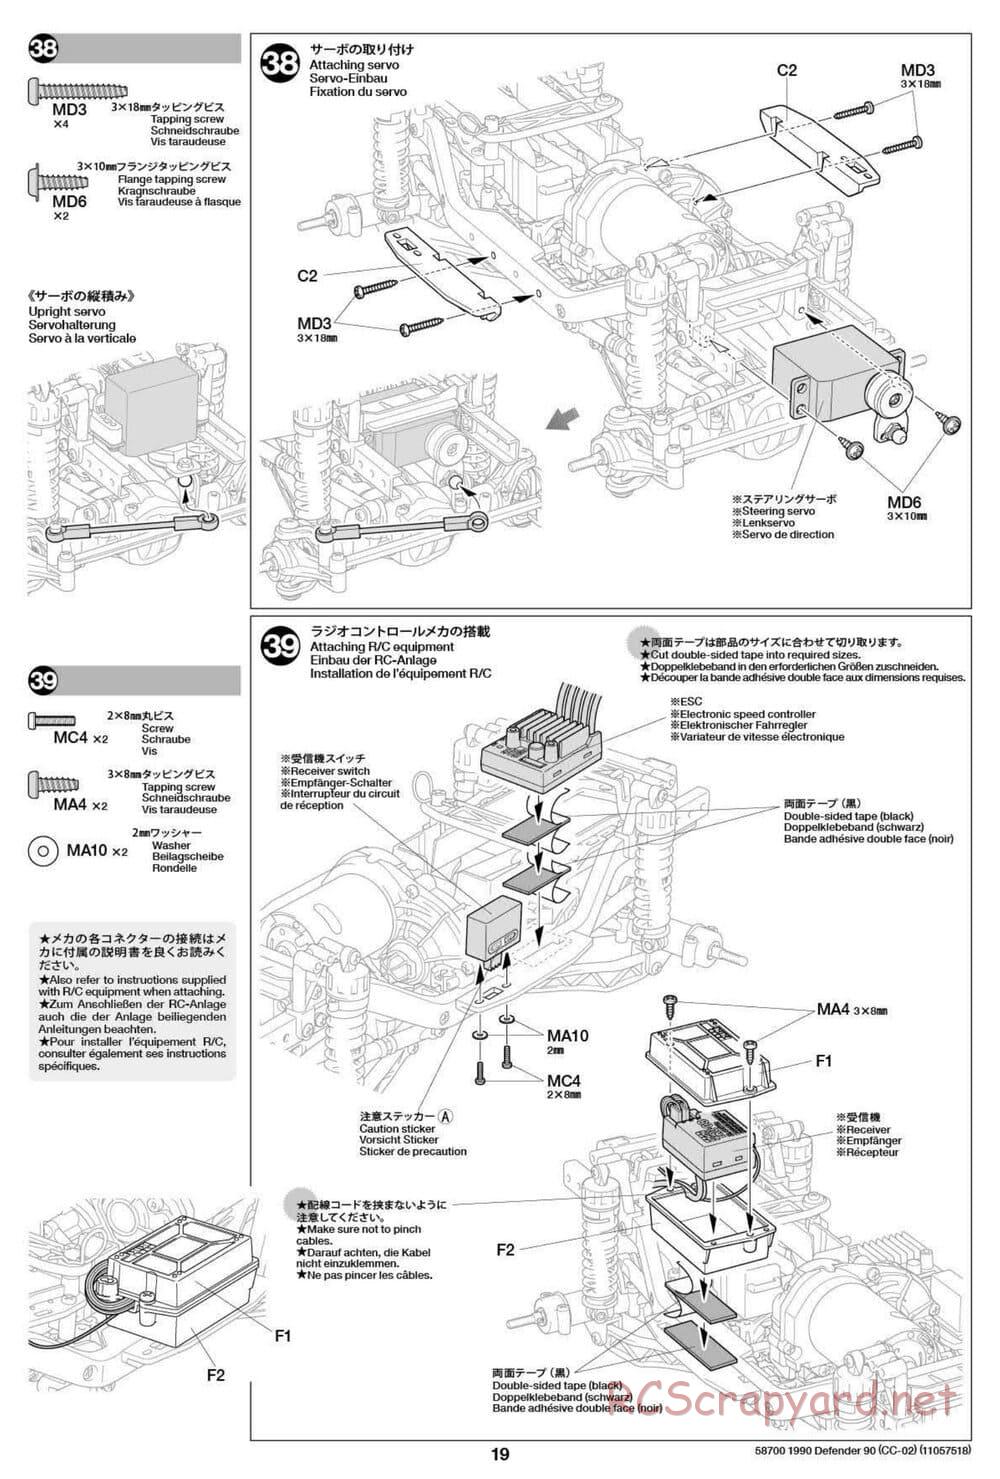 Tamiya - 1990 Land Rover Defender 90 - CC-02 Chassis - Manual - Page 19